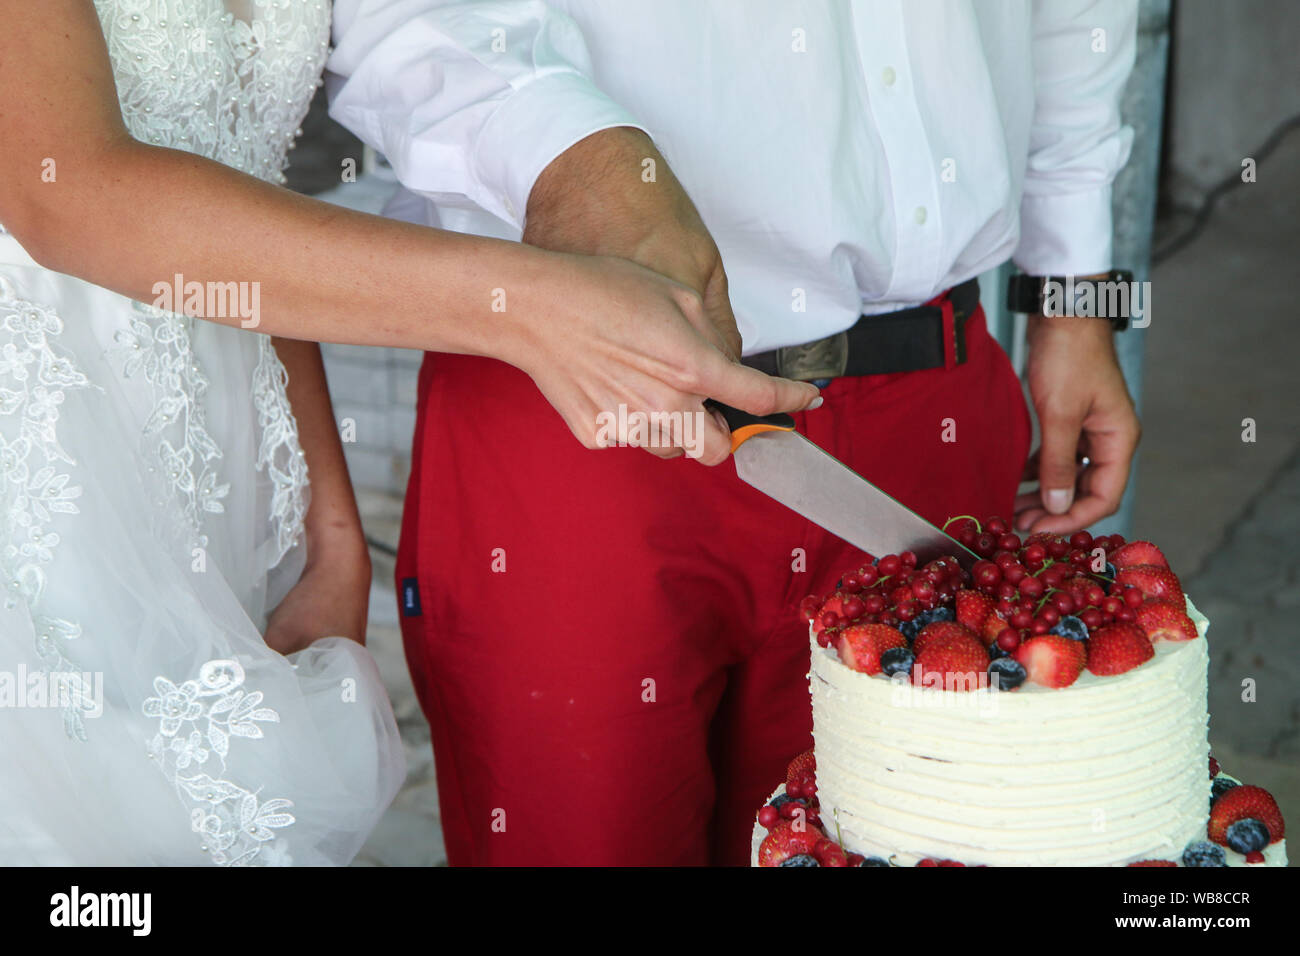 Le détail des mains de la mariée et le marié pendant la cérémonie de mariage. Ils réduisent ainsi le gâteau de mariage. Banque D'Images